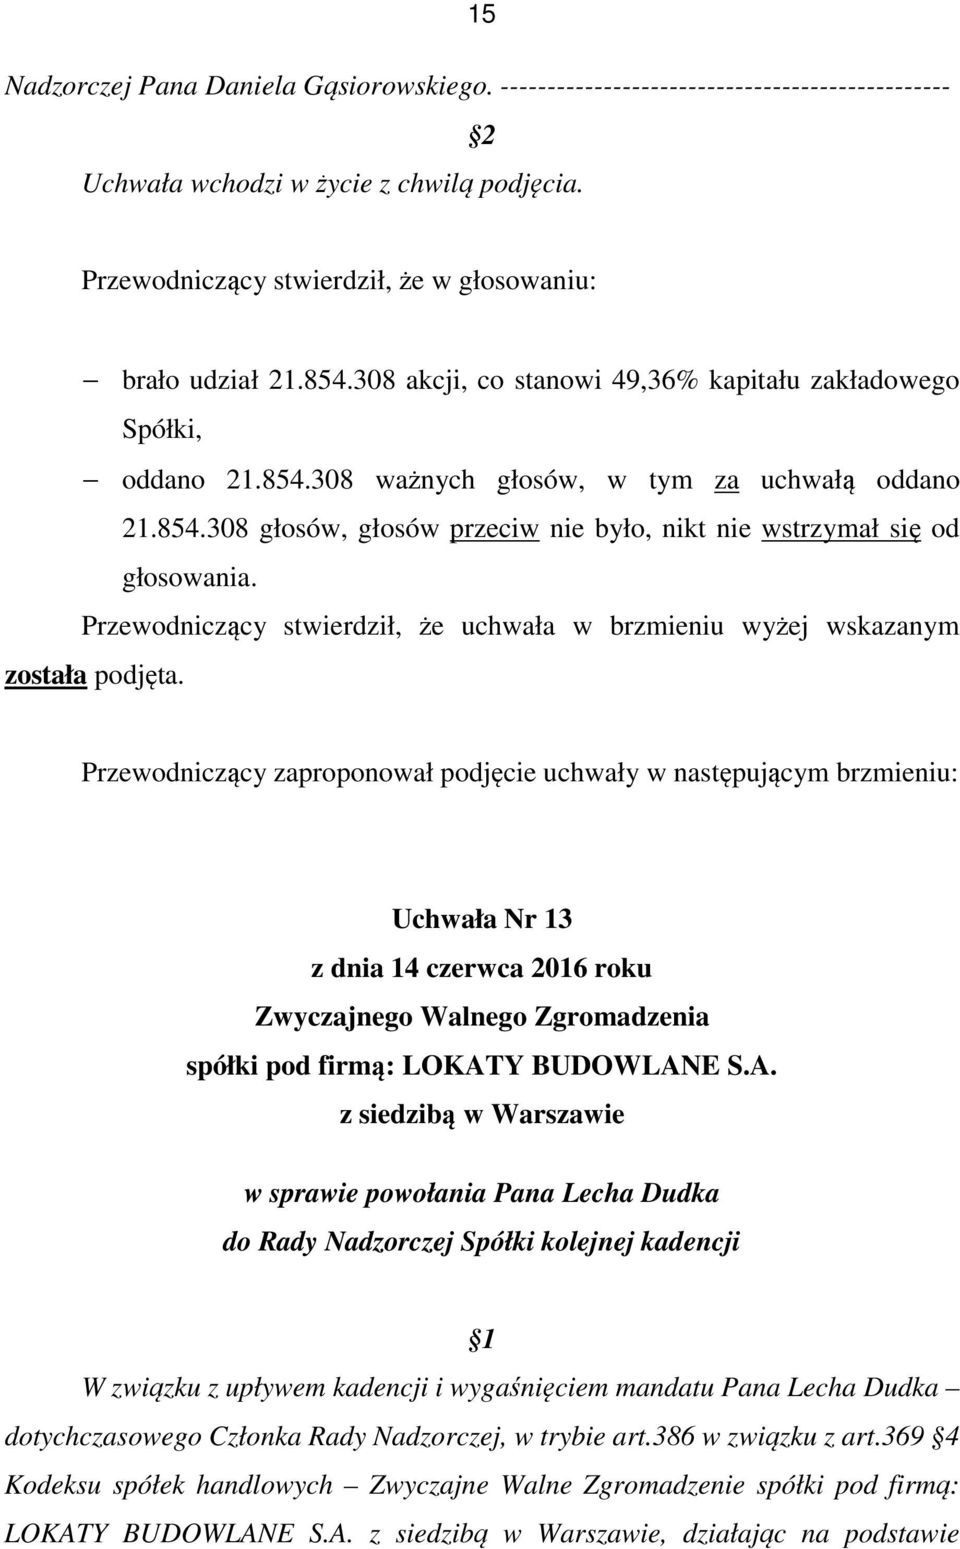 Uchwała Nr 13 w sprawie powołania Pana Lecha Dudka do Rady Nadzorczej Spółki kolejnej kadencji W związku z upływem kadencji